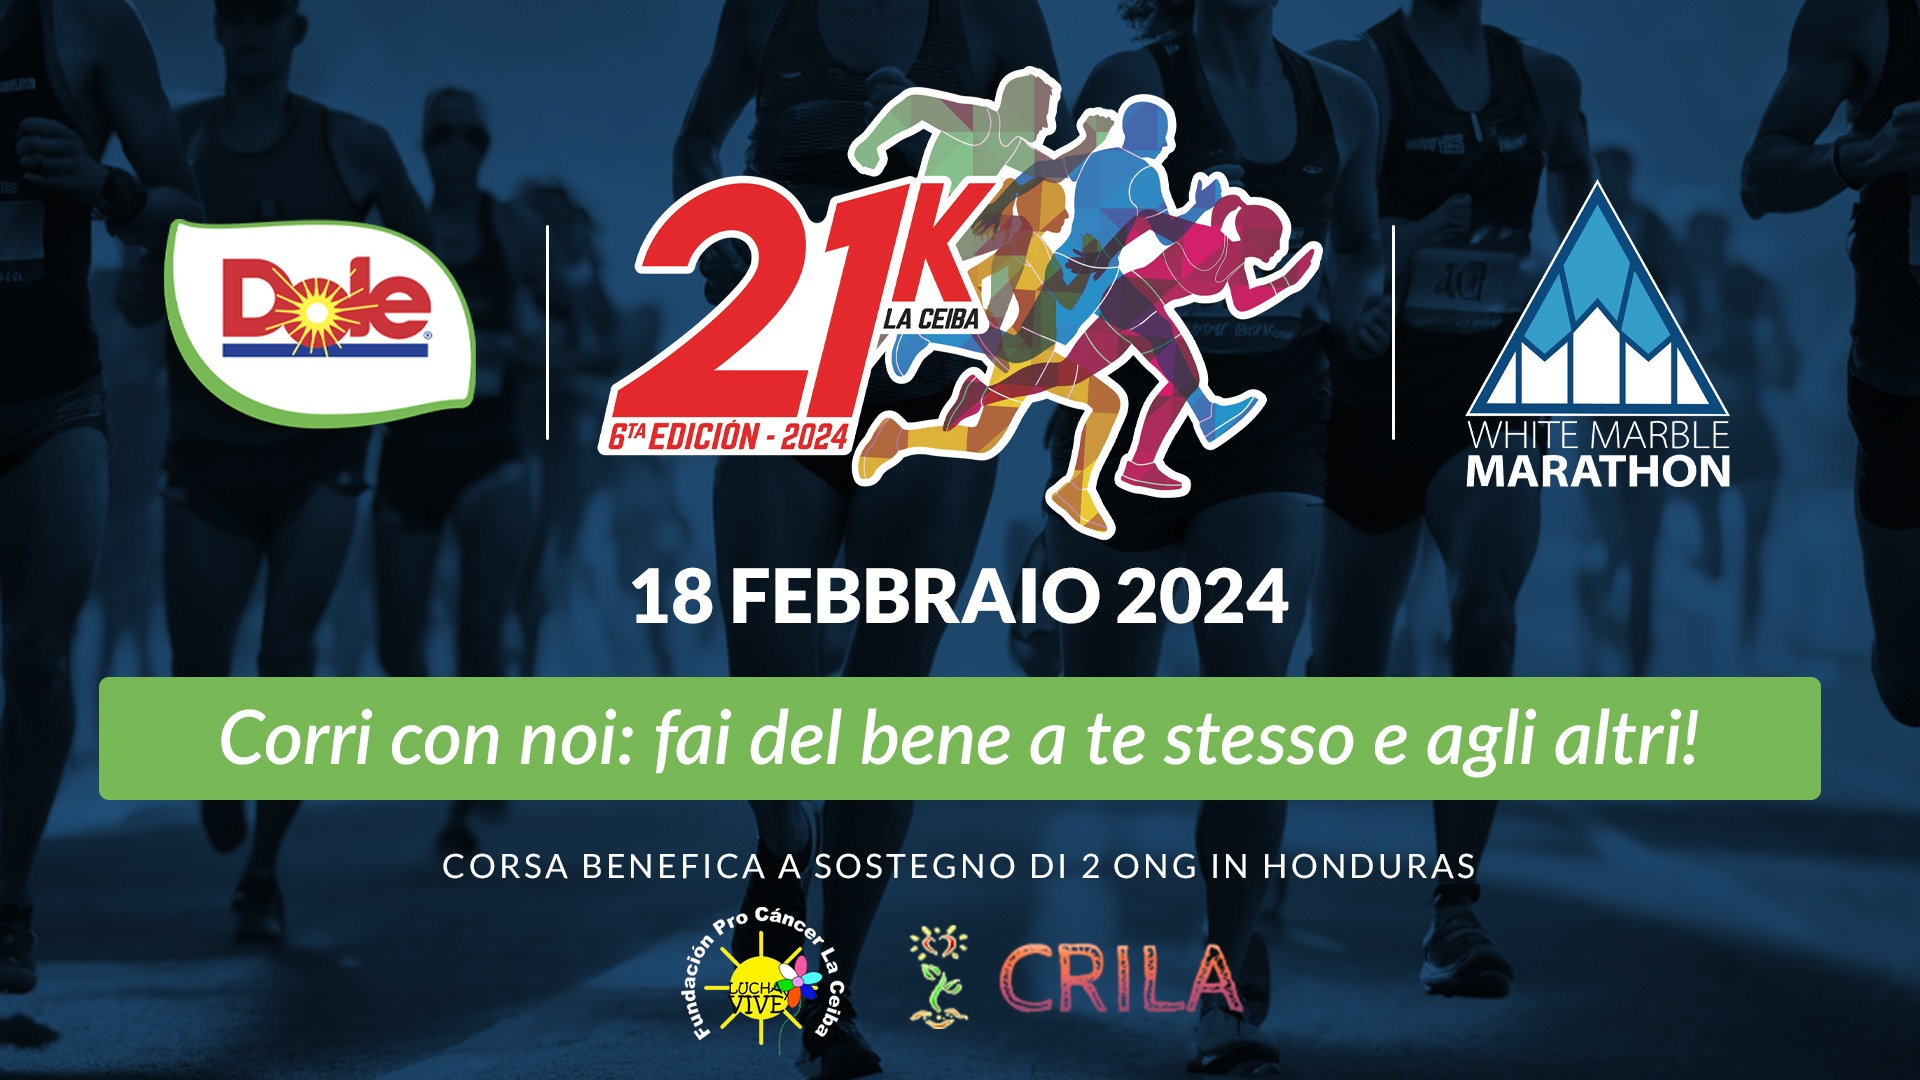 21K La Ceiba:  unisciti all’impegno di Dole Italia per lo sviluppo e il benessere della località di La Ceiba (Honduras)